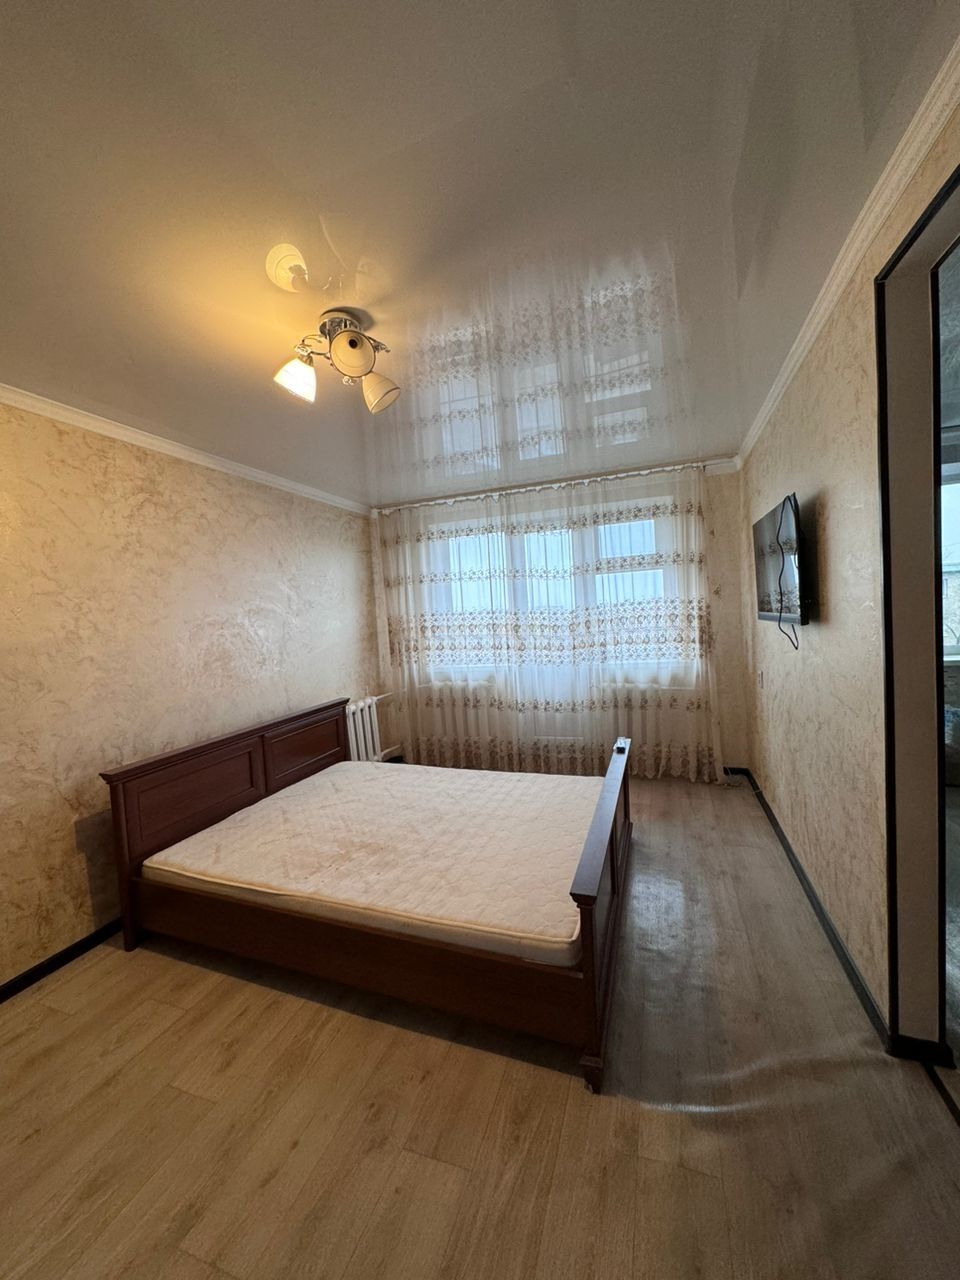 Продам 1 комнатную квартиру в центре города 4 этаж, Мангилик Ел 10